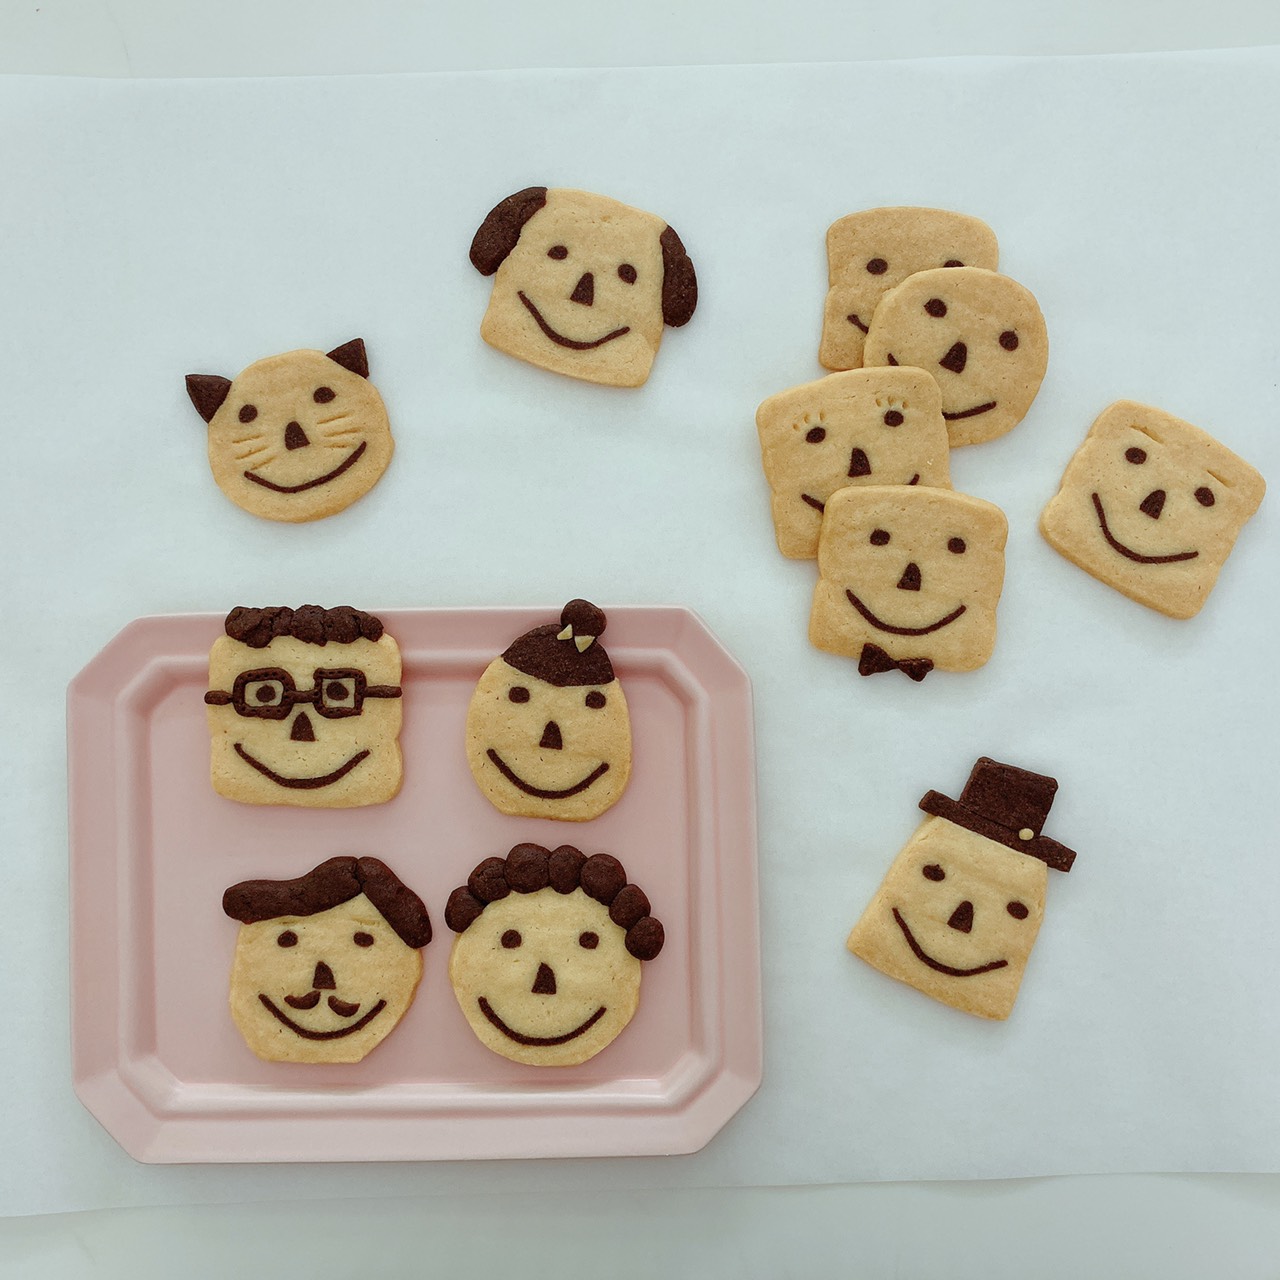 子どもと一緒に作りたい ほんわか表情がかわいい 顔クッキー の作り方 Anna アンナ